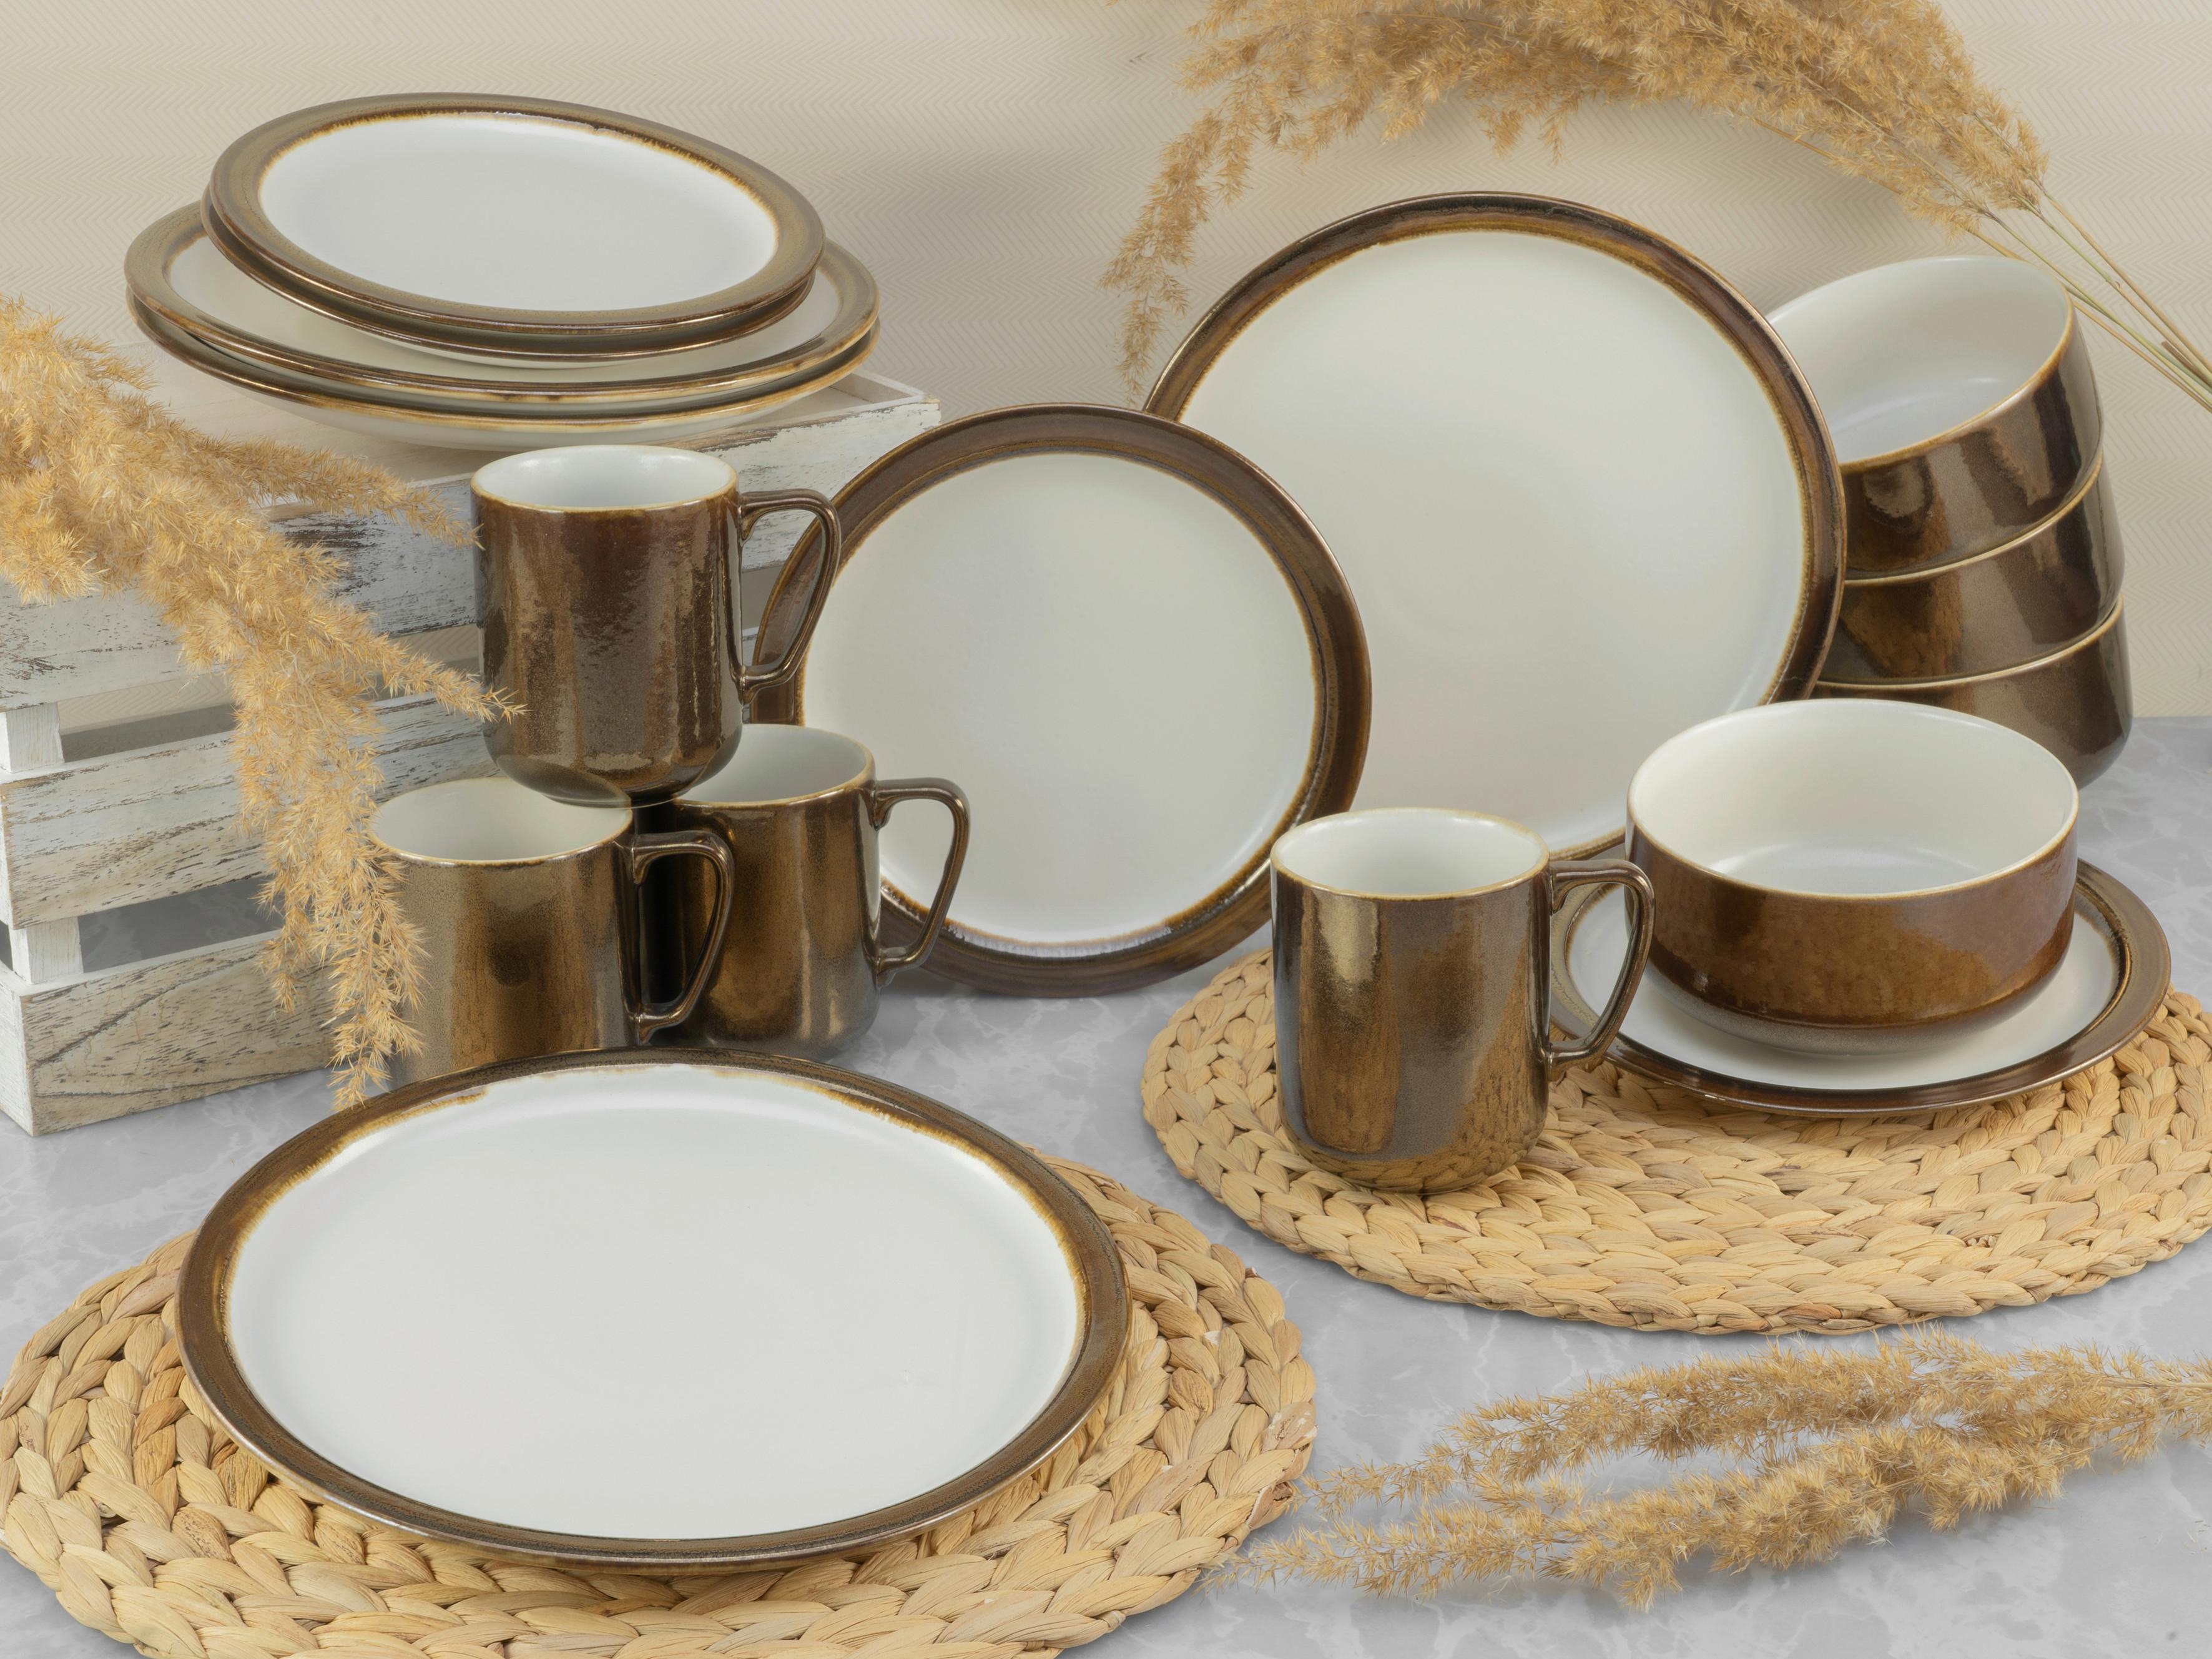 Kombinovaná Souprava 16-Dílna, Bílá/zlatá - bílá/barvy zlata, keramika (38,5/38/34cm) - Creatable